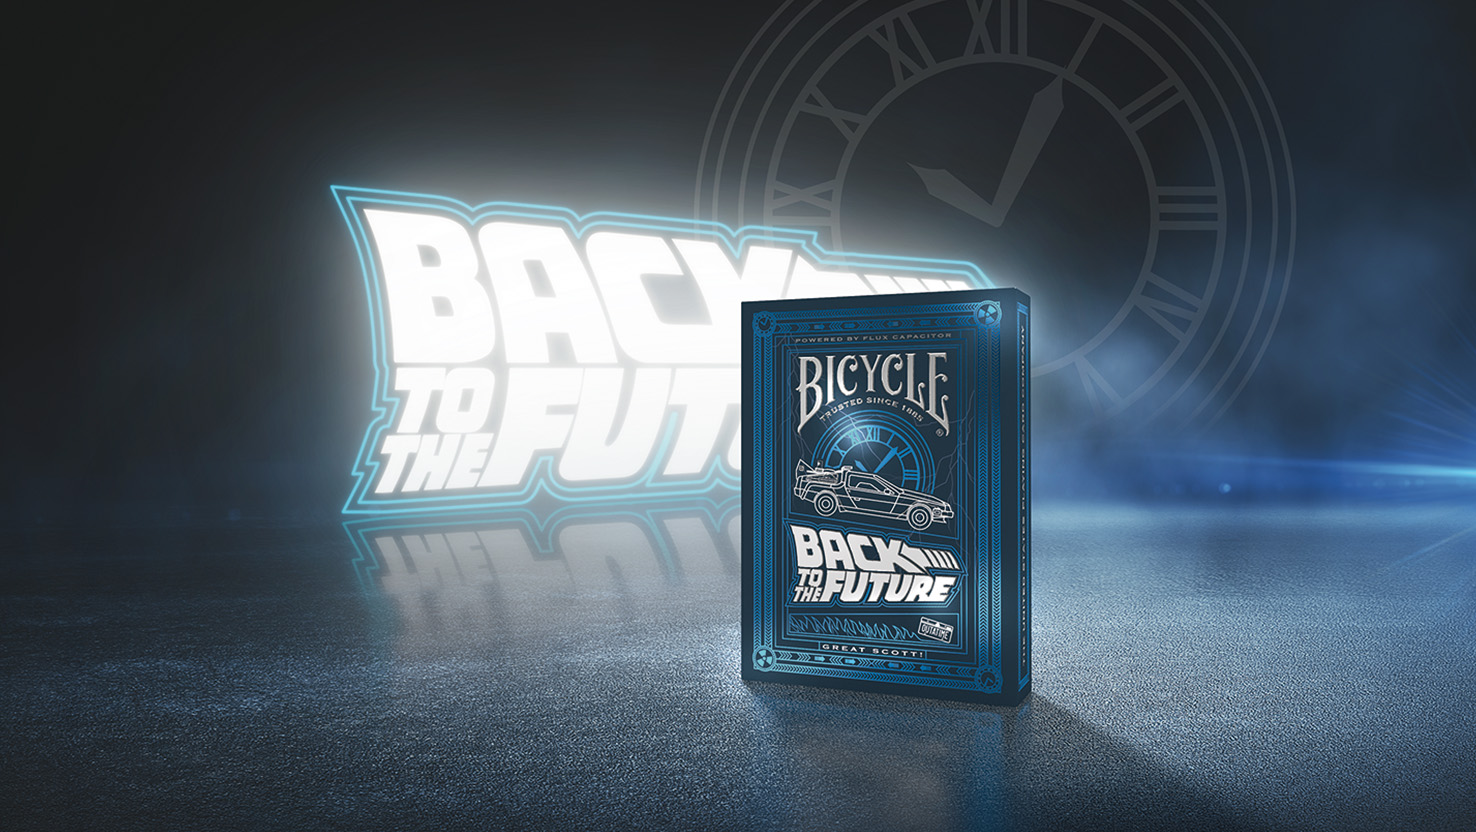 Das neue Back to the Future Kartenspiel der Bicycle Creatives Kartendecks steht vor einem dunklen Hintergrund in dem das back to the Future Logo leuchtet. Marty McFly, Bicycle Spielkarten